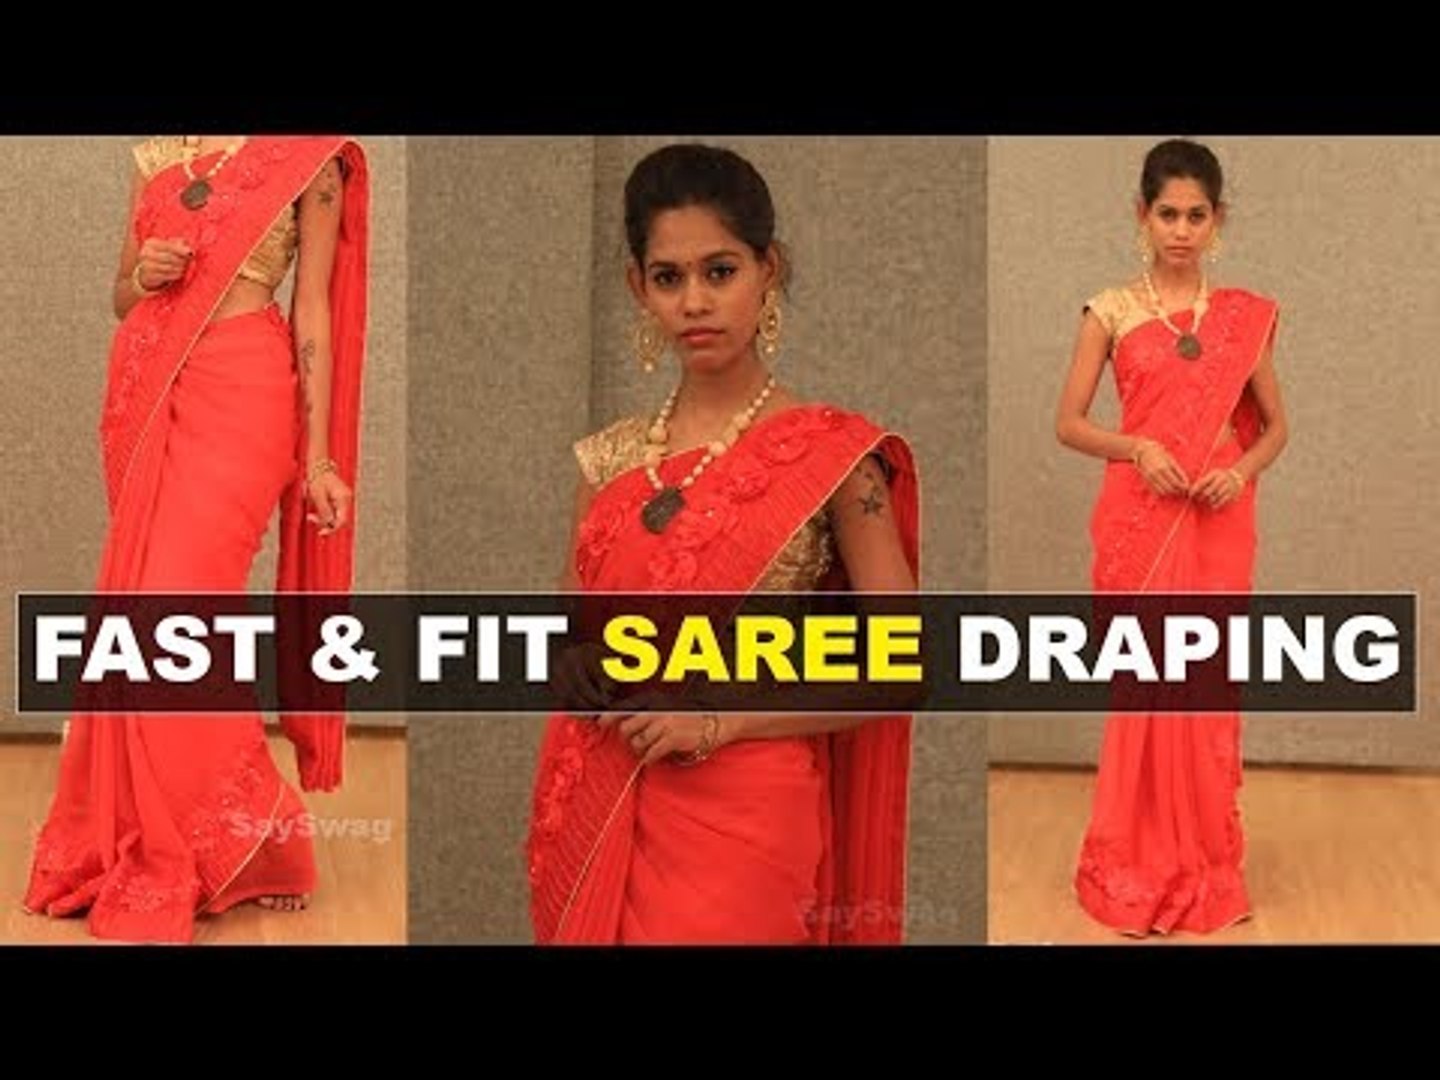 5 நிமிடத்தில் புடவை கட்டுவது எப்படி | Saree draping Tamil - video  Dailymotion